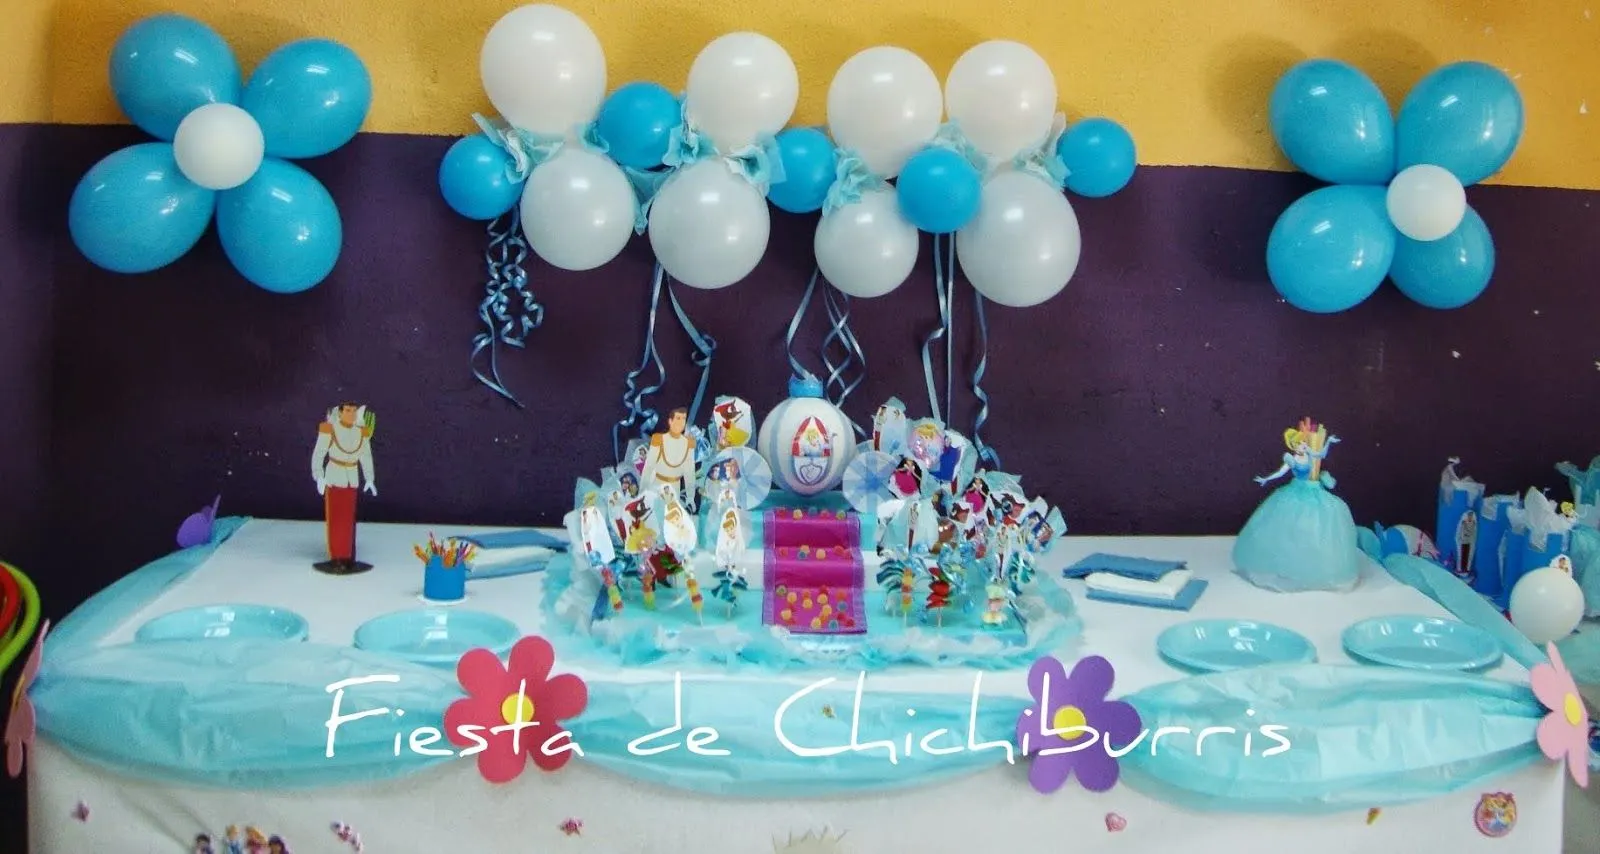 Fiesta de Chichiburris: Fiesta de cumpleaños para niñas..."La ...